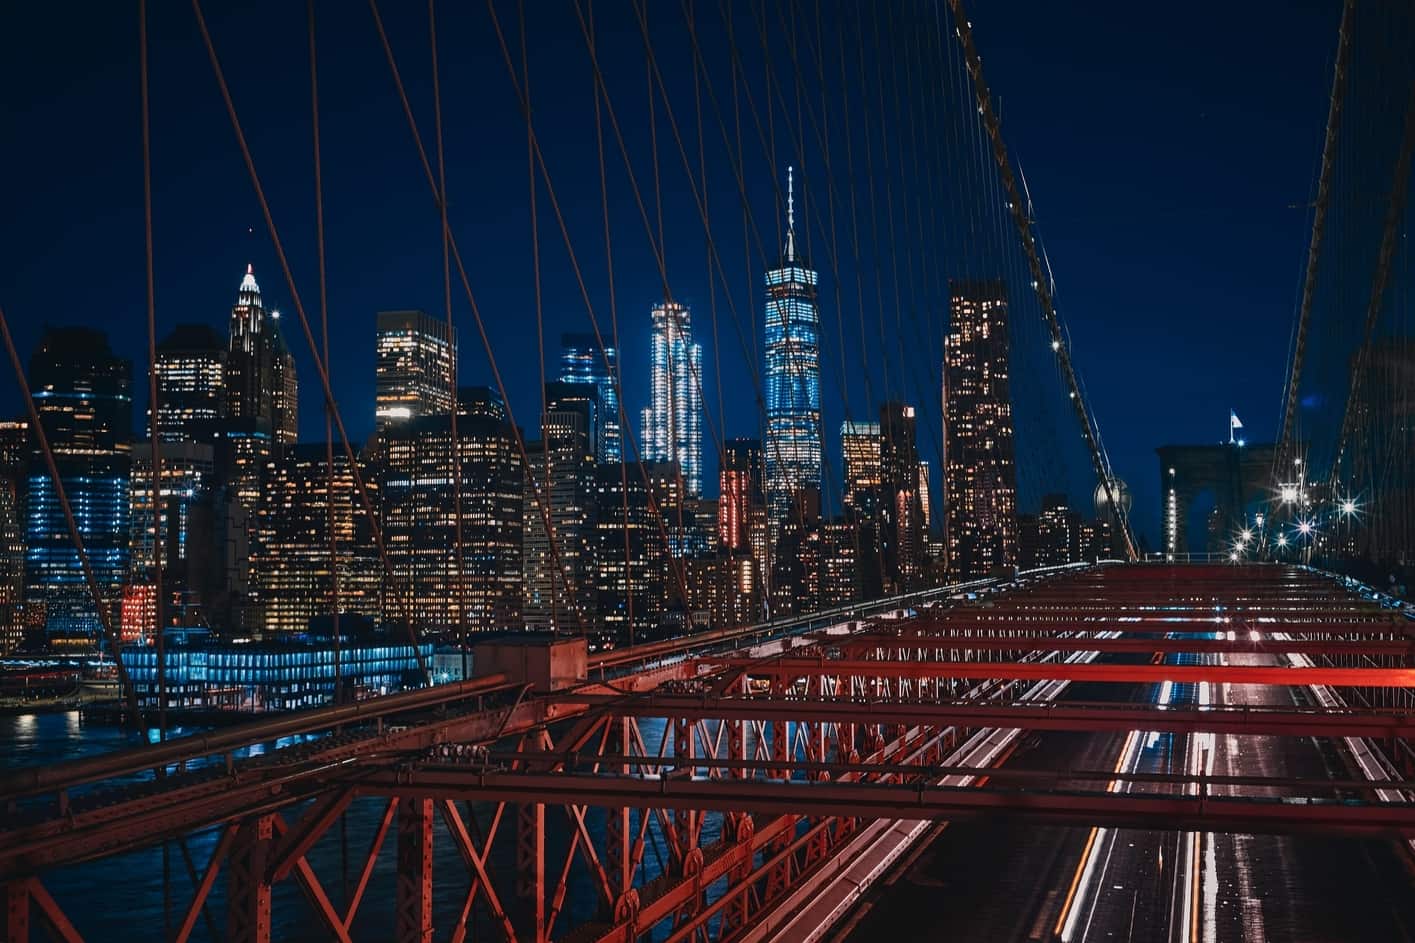 Puente de Brooklyn Bridge, paseo en barco nocturno nueva york